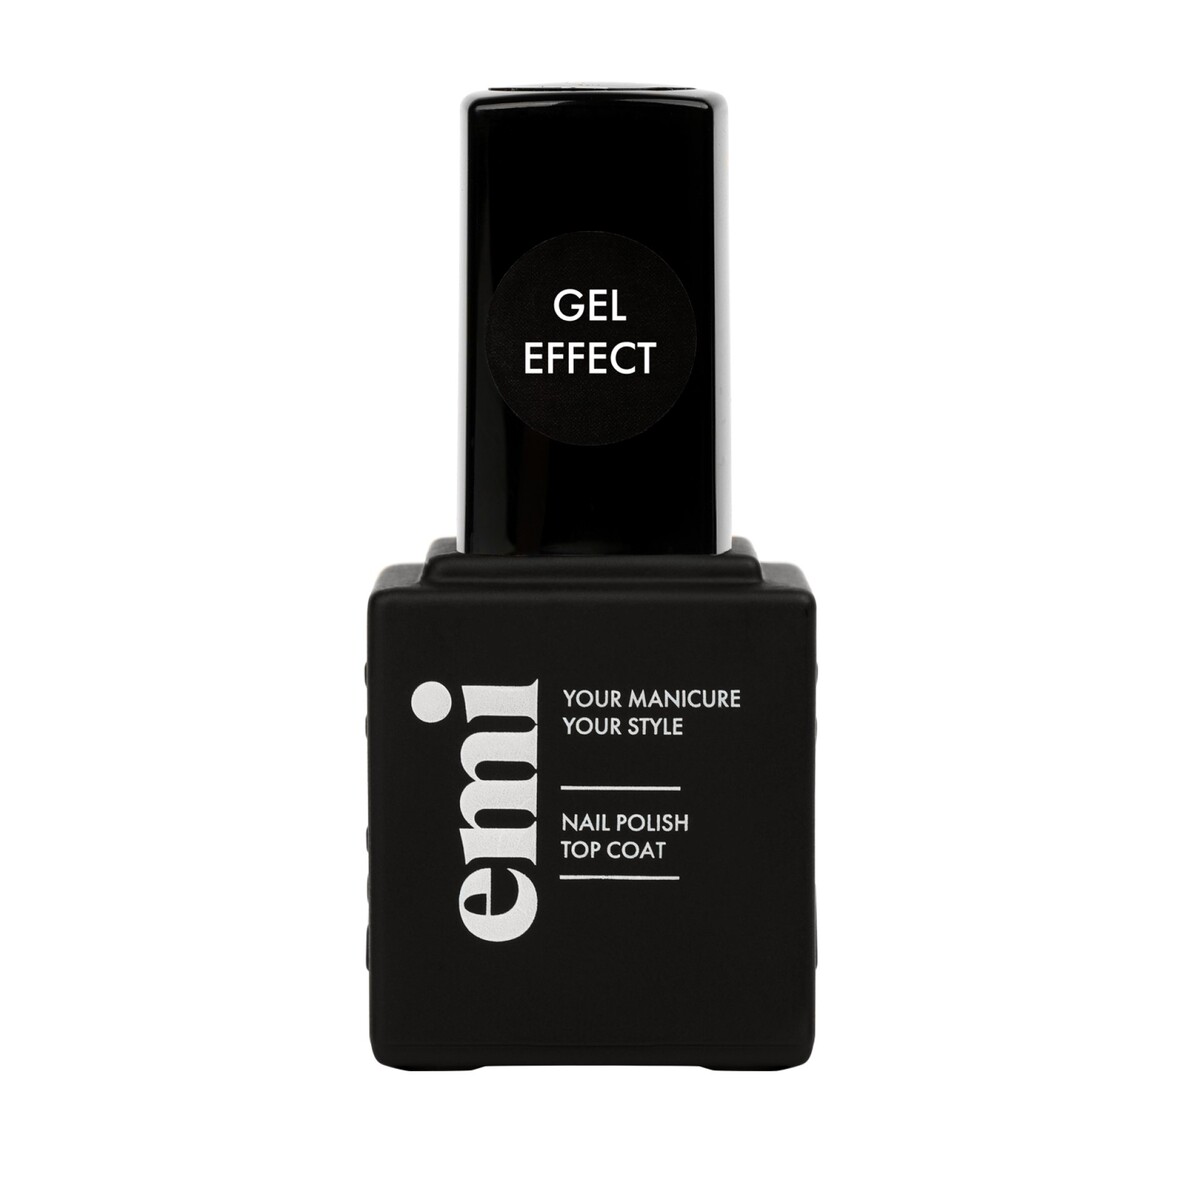 Купить Ultra Strong Top Coat Gel Effect, 9 мл. в официальном магазине EMI с доставкой по России